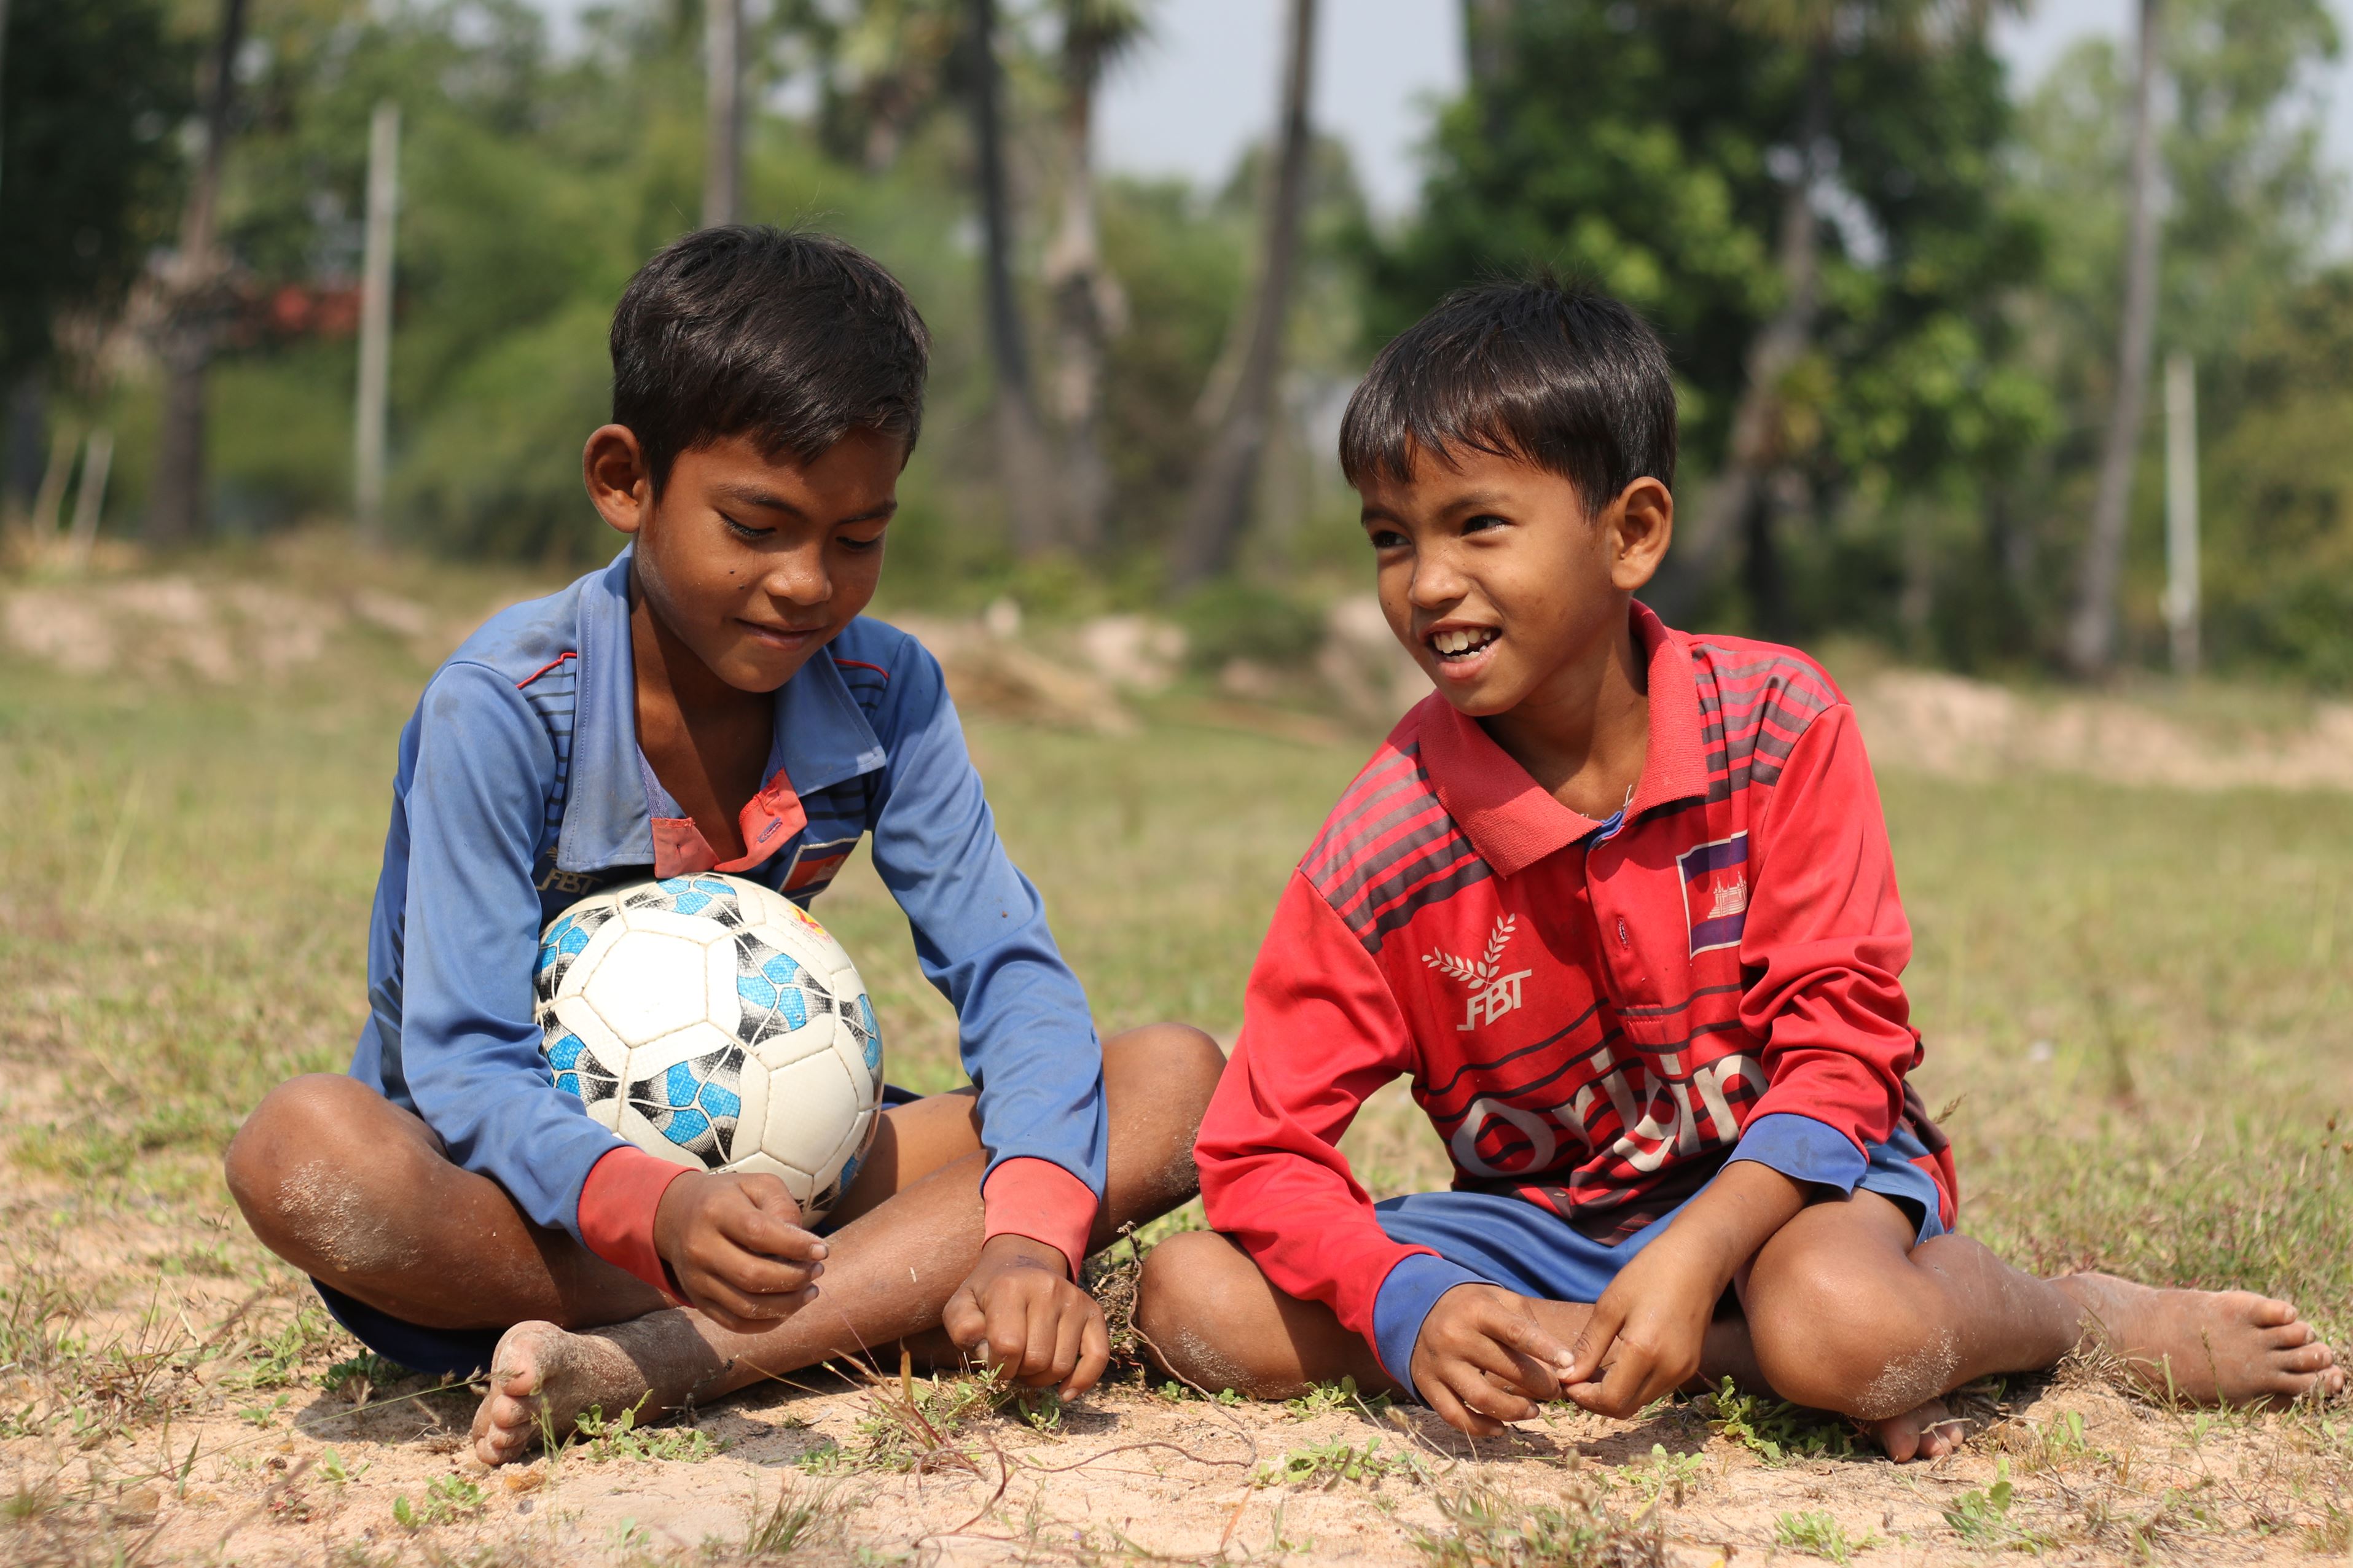 Dos niños sentados en un suelo de tierra, uno de ello tiene un balón de fútbol